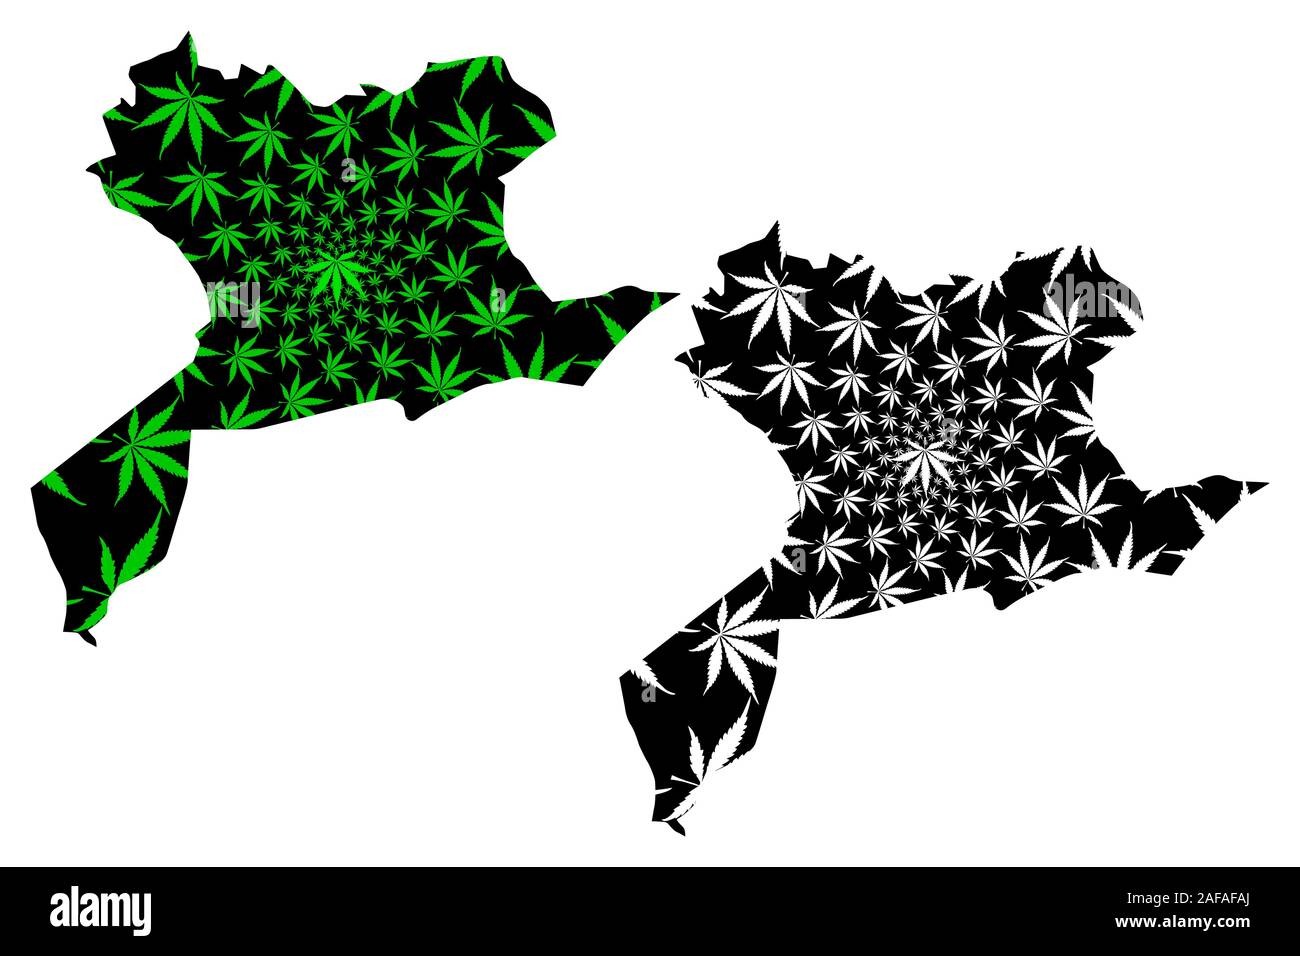 Province de Saida (Provinces de l'Algérie, la République démocratique populaire lao de l'Algérie) la carte est conçue de feuilles de cannabis vert et noir, Saïda carte de marijua Illustration de Vecteur